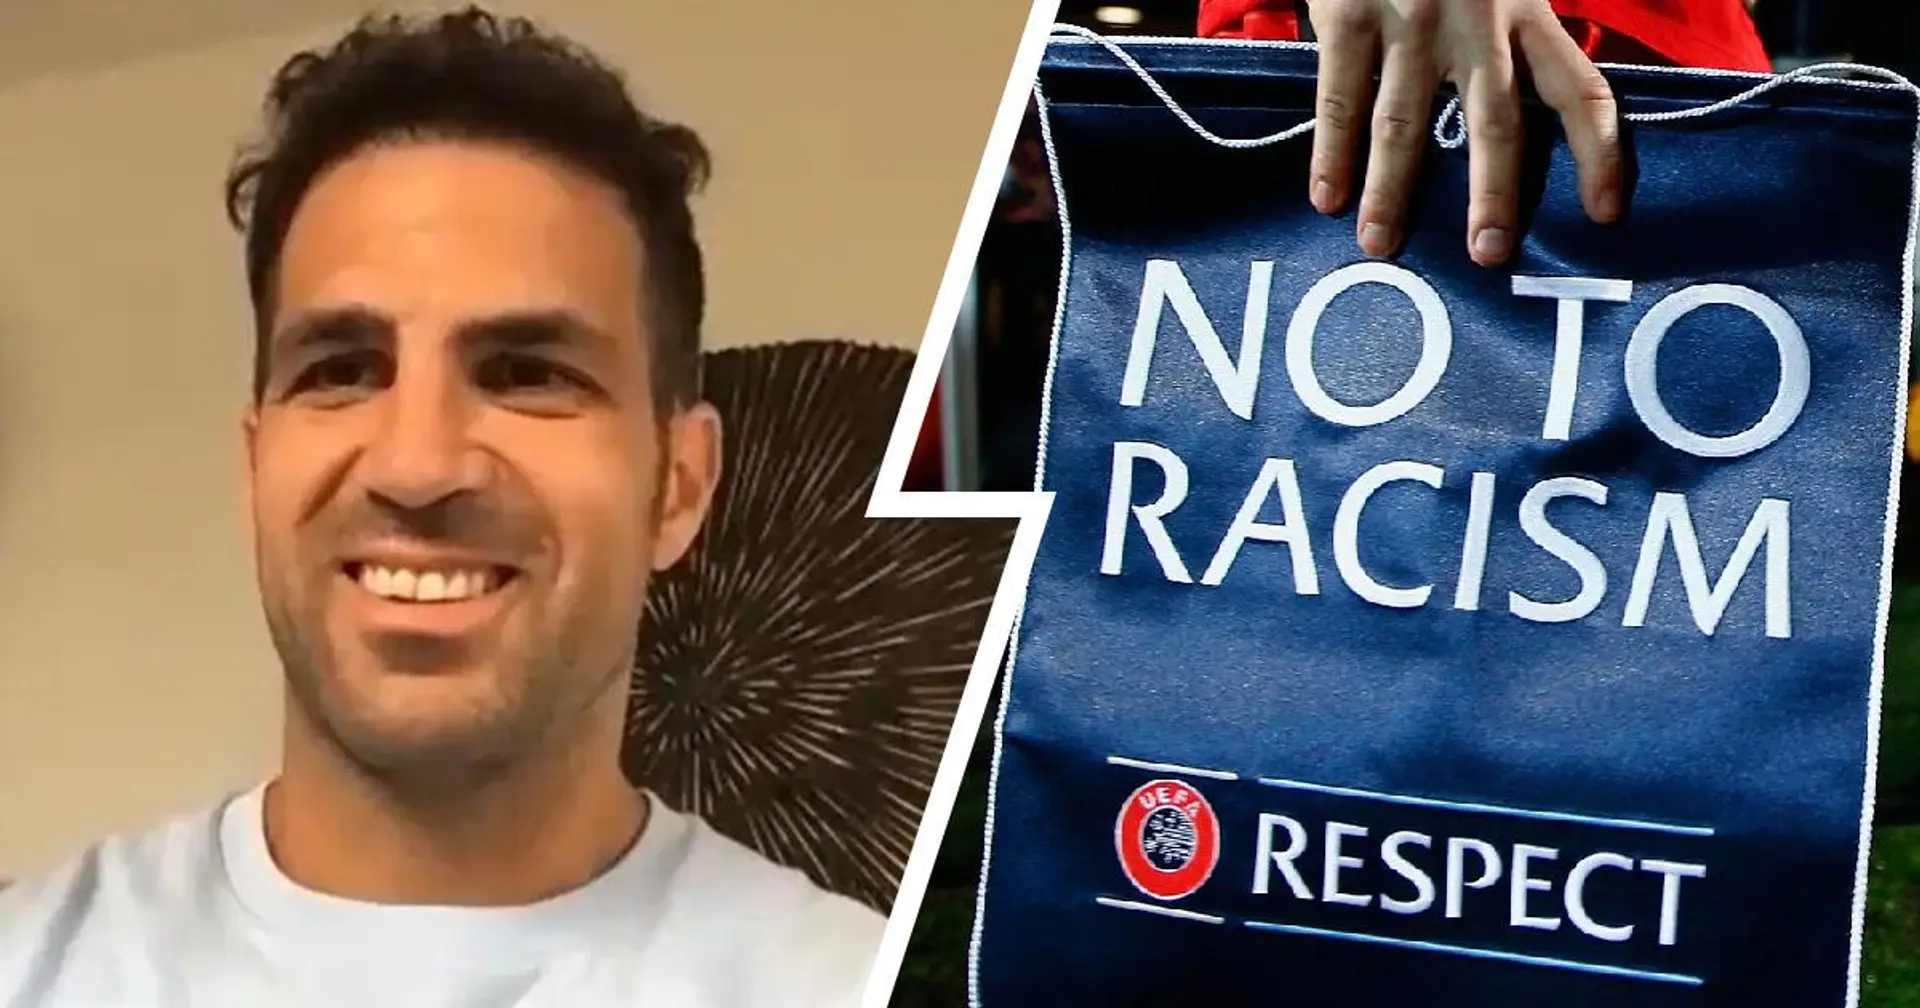 'Cerrar estadios, prohibir pancartas': Cesc Fàbregas propone medidas para acabar con el racismo en el fútbol